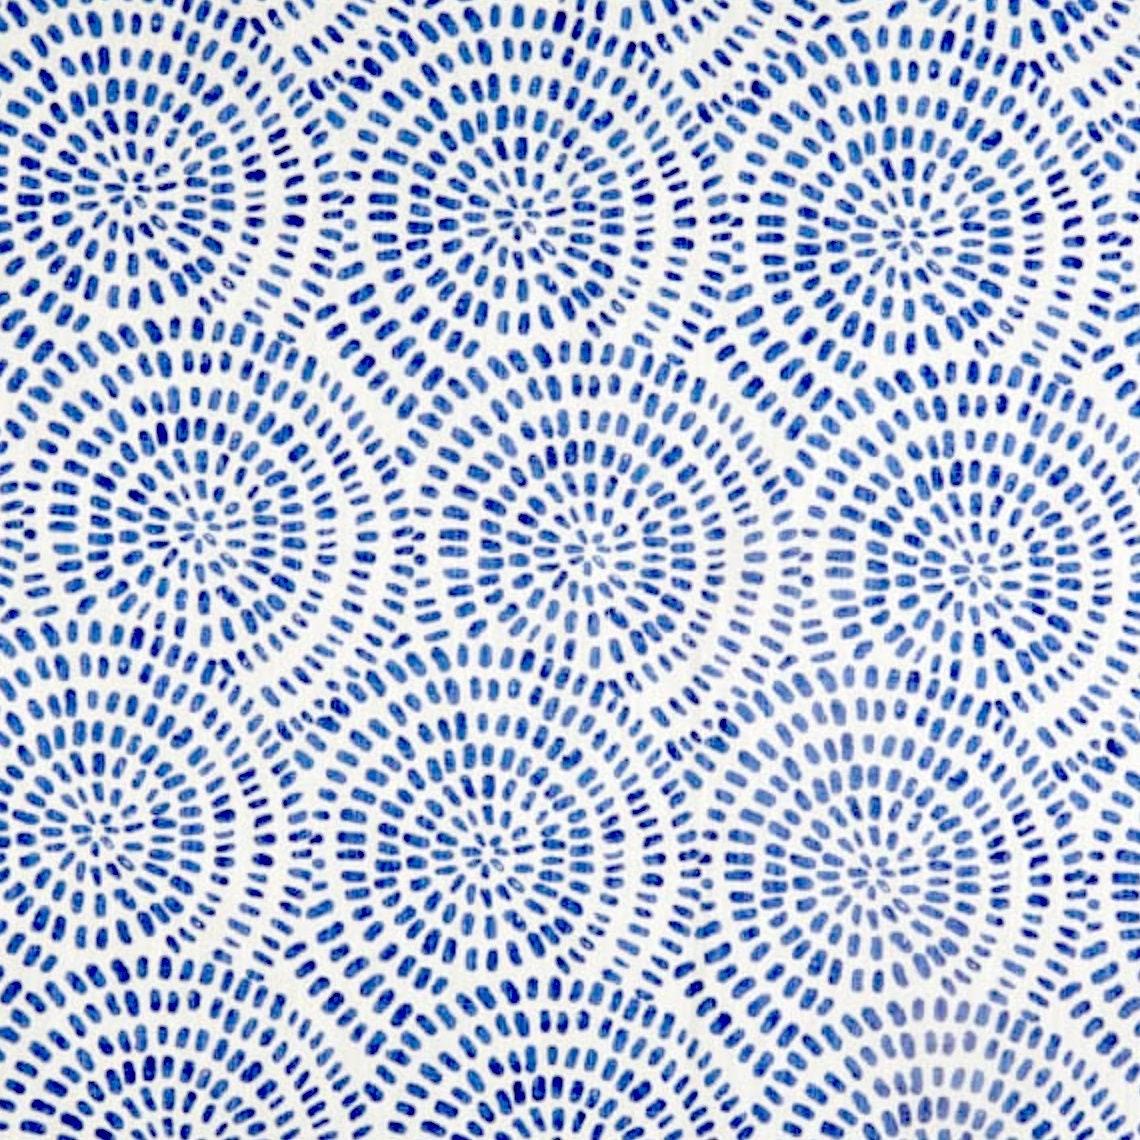 decorative pillows in cecil commodore blue watercolor dot circular geometric